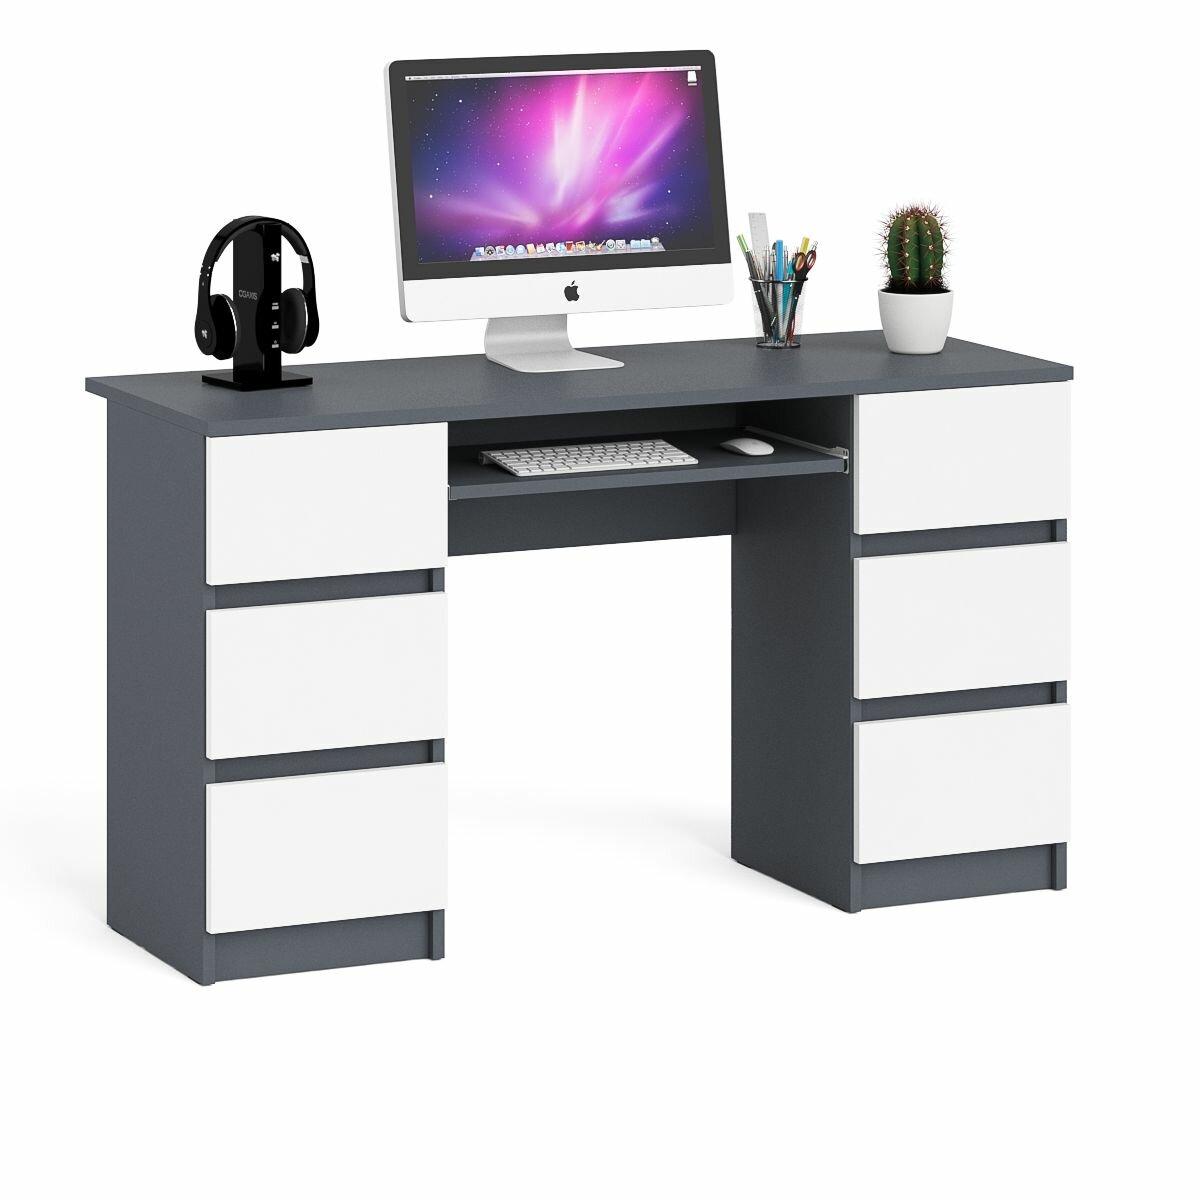 Компьютерный стол с двумя тумбами Мори МС-2, цвет графит/белый, ШхГхВ 135,4х50х76,6 см.